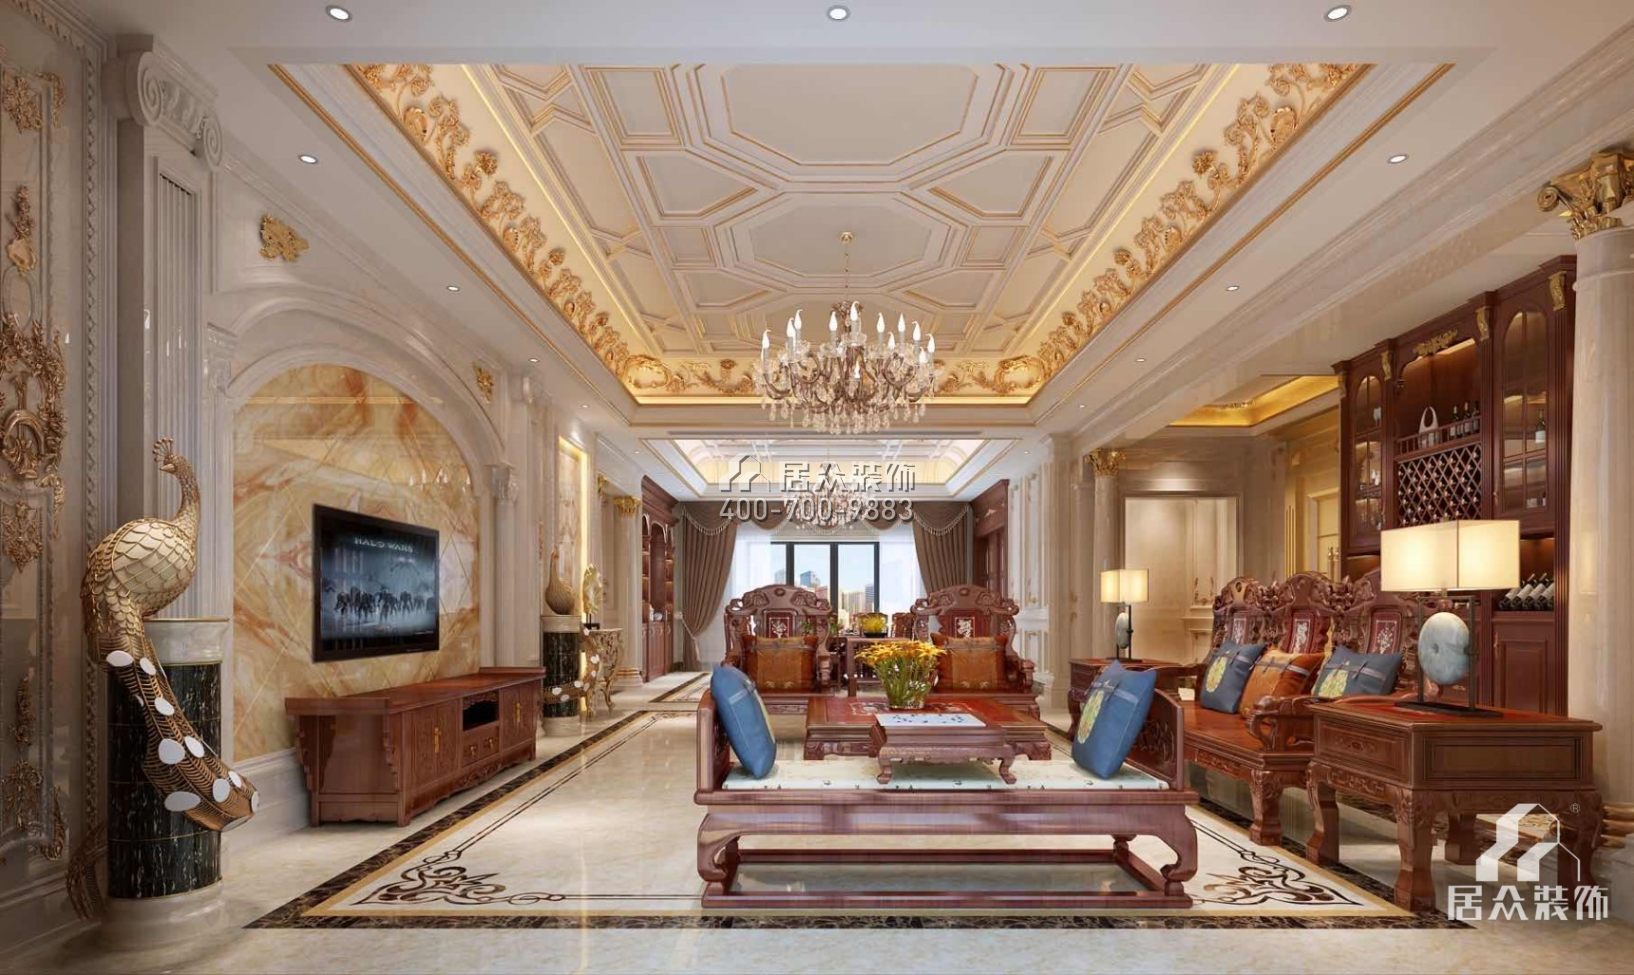 龙泉豪苑560平方米混搭风格平层户型客厅装修效果图